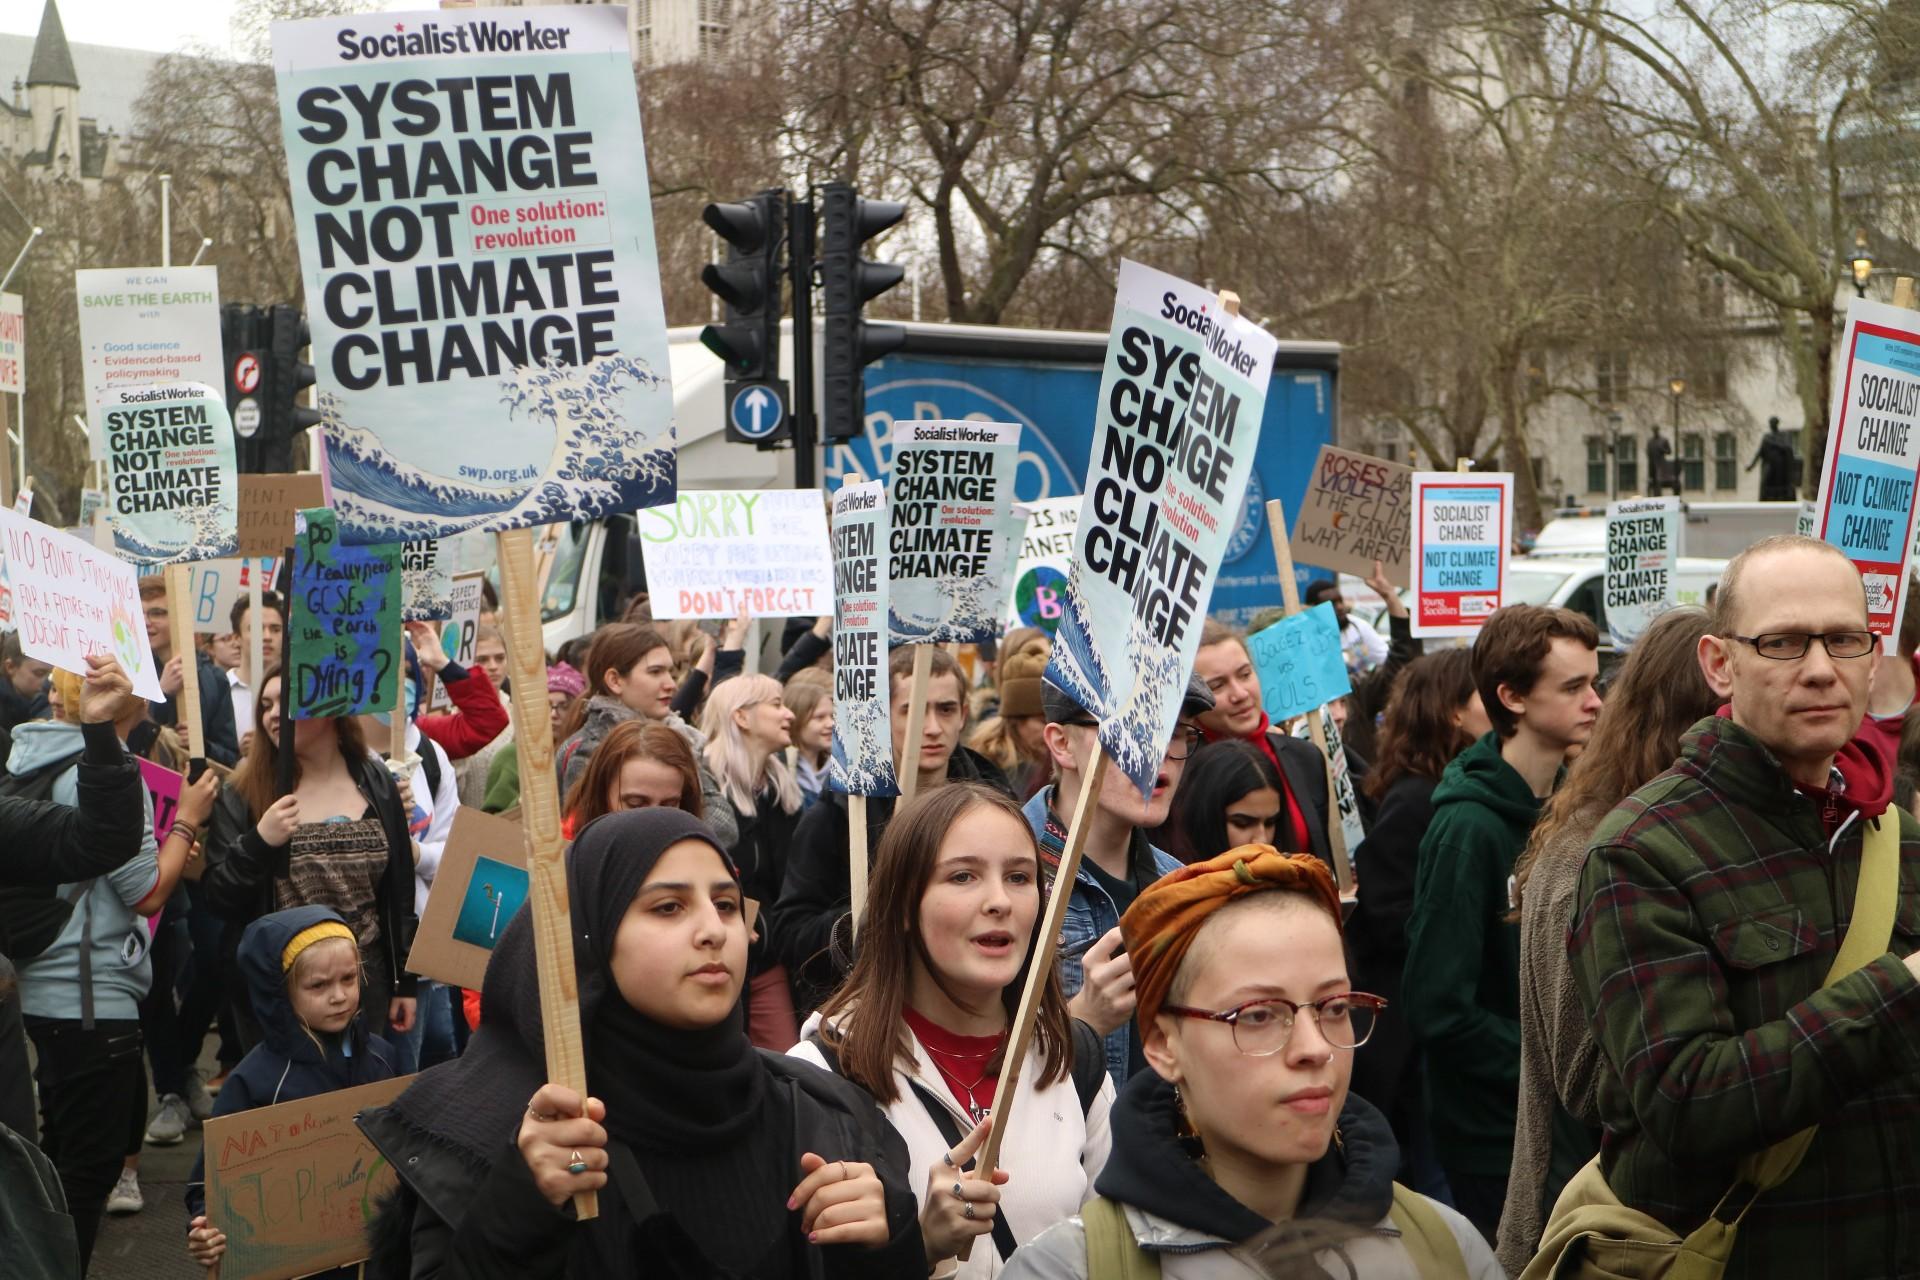 على الرغم من نداءات العلماء واحتجاجات الناشطين، لم يتخذ السياسيون في معظم دول العالم خطواتٍ فعّالة للحد من تغير المناخ